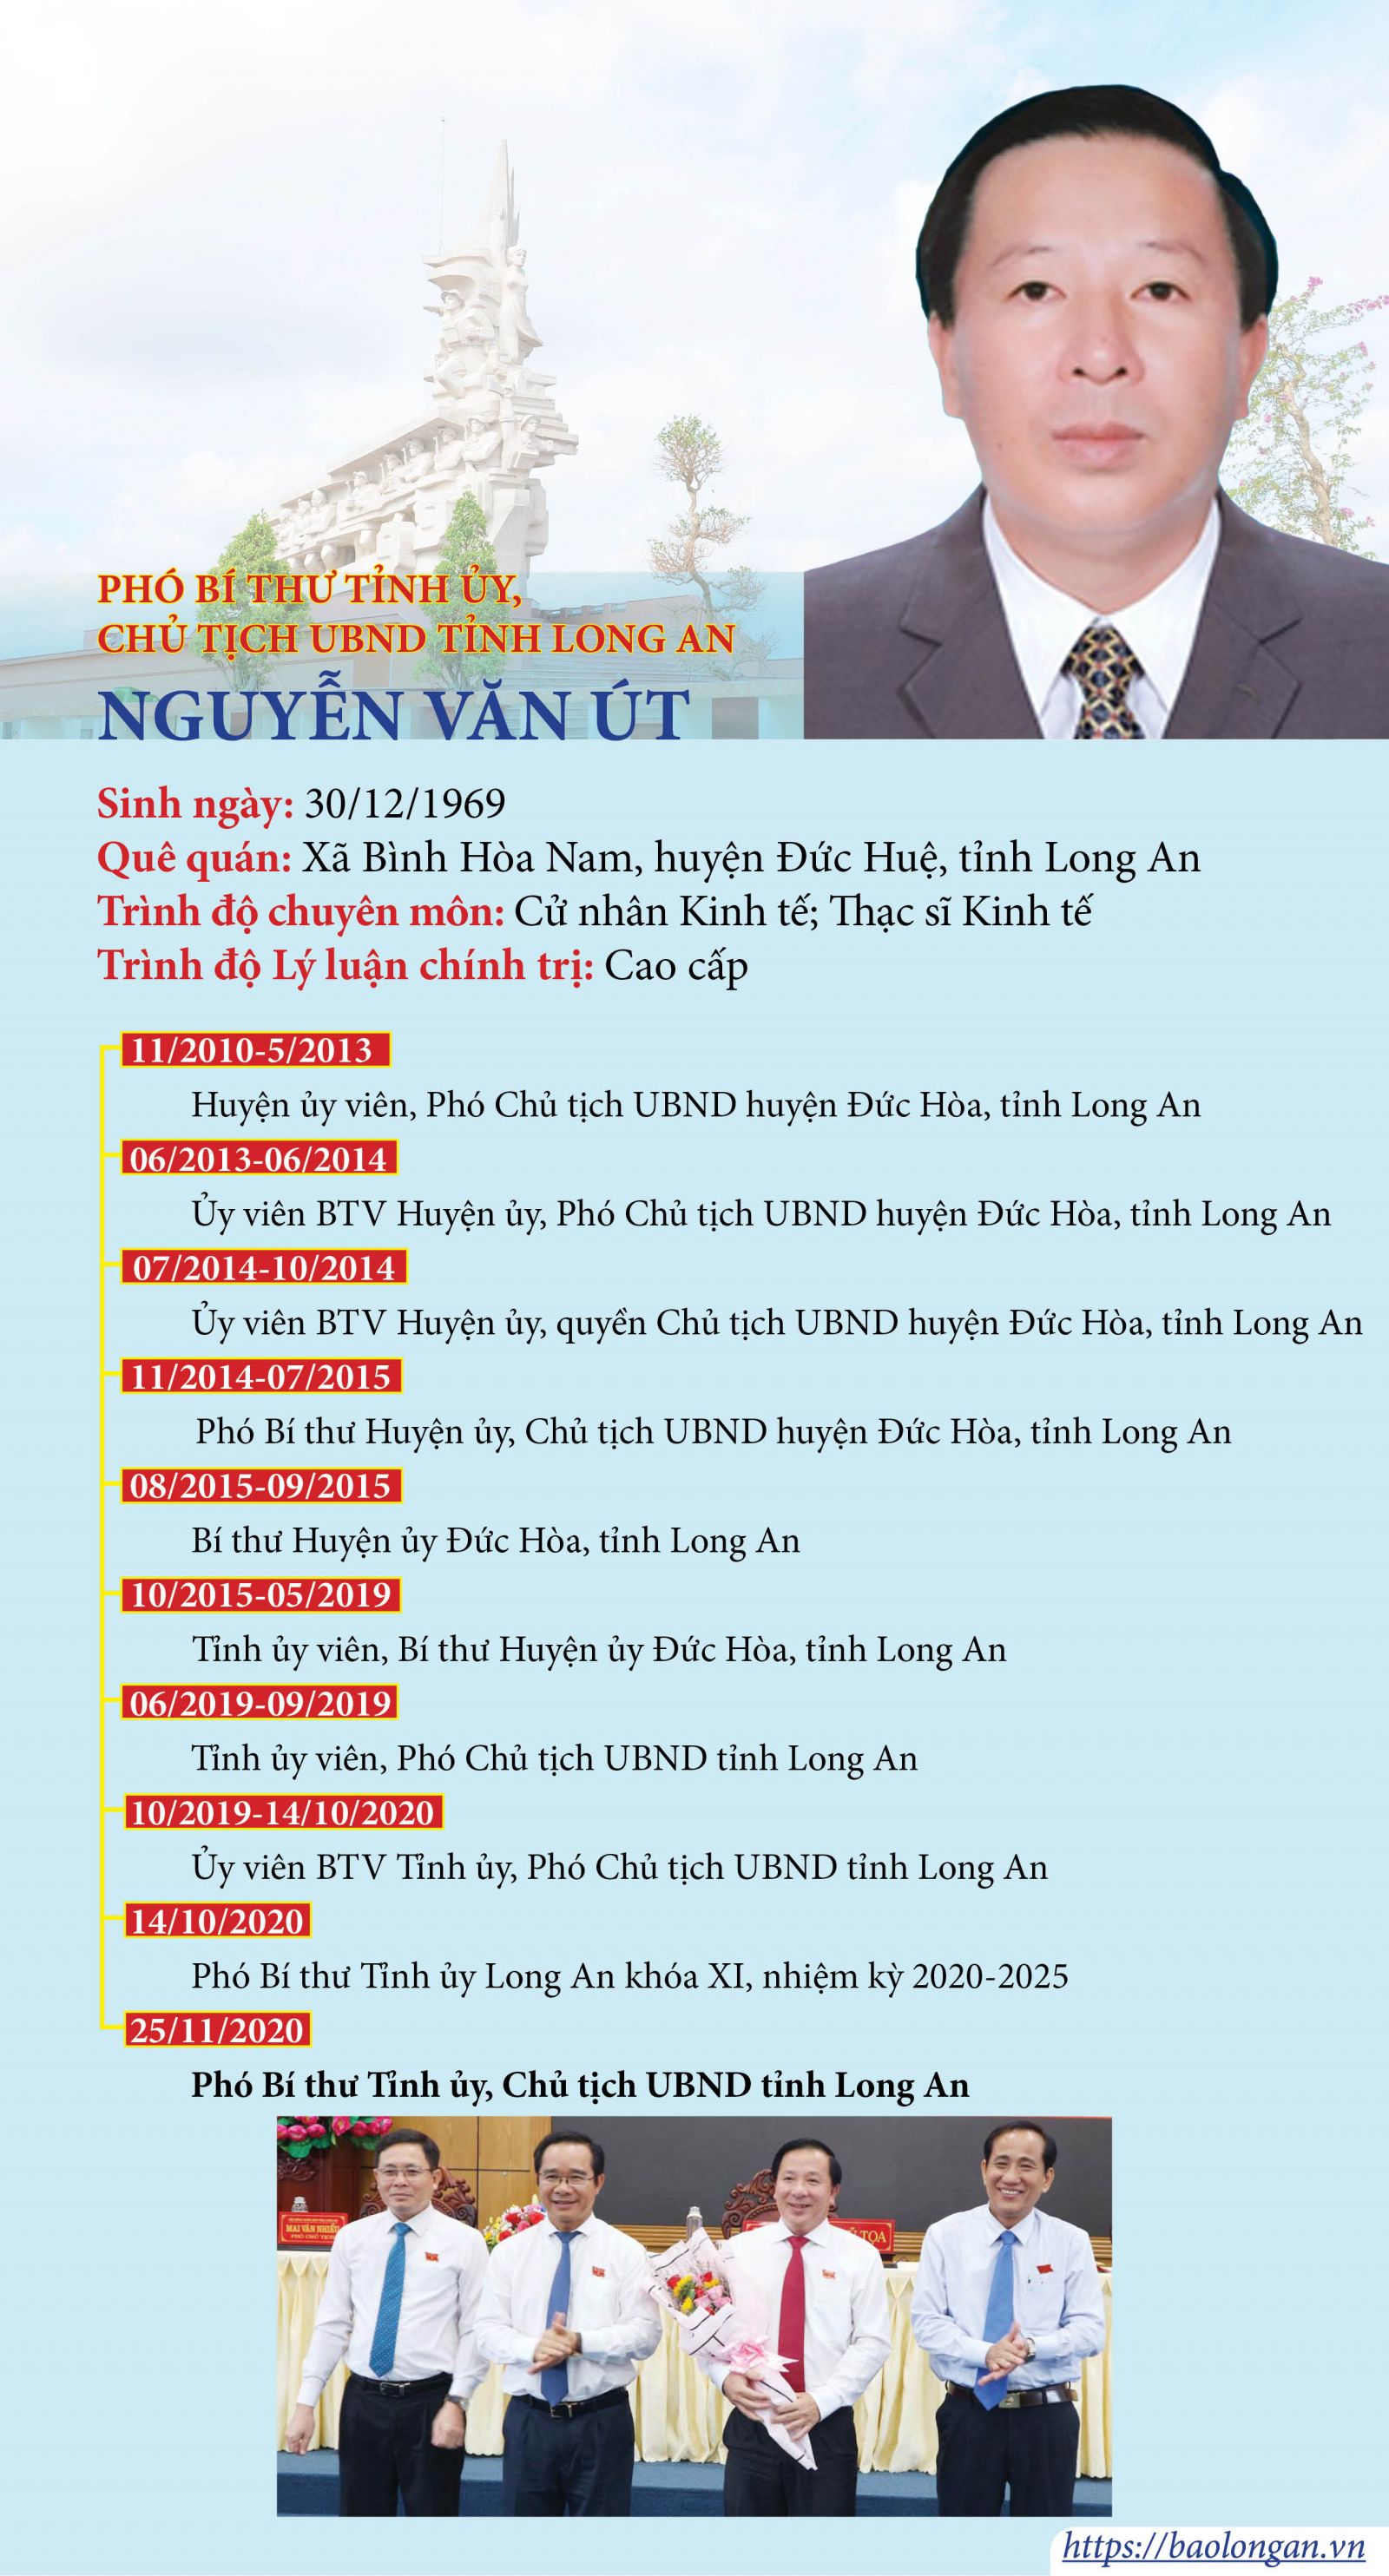 Chủ tịch UBND tỉnh Long An - Nguyễn Văn Út